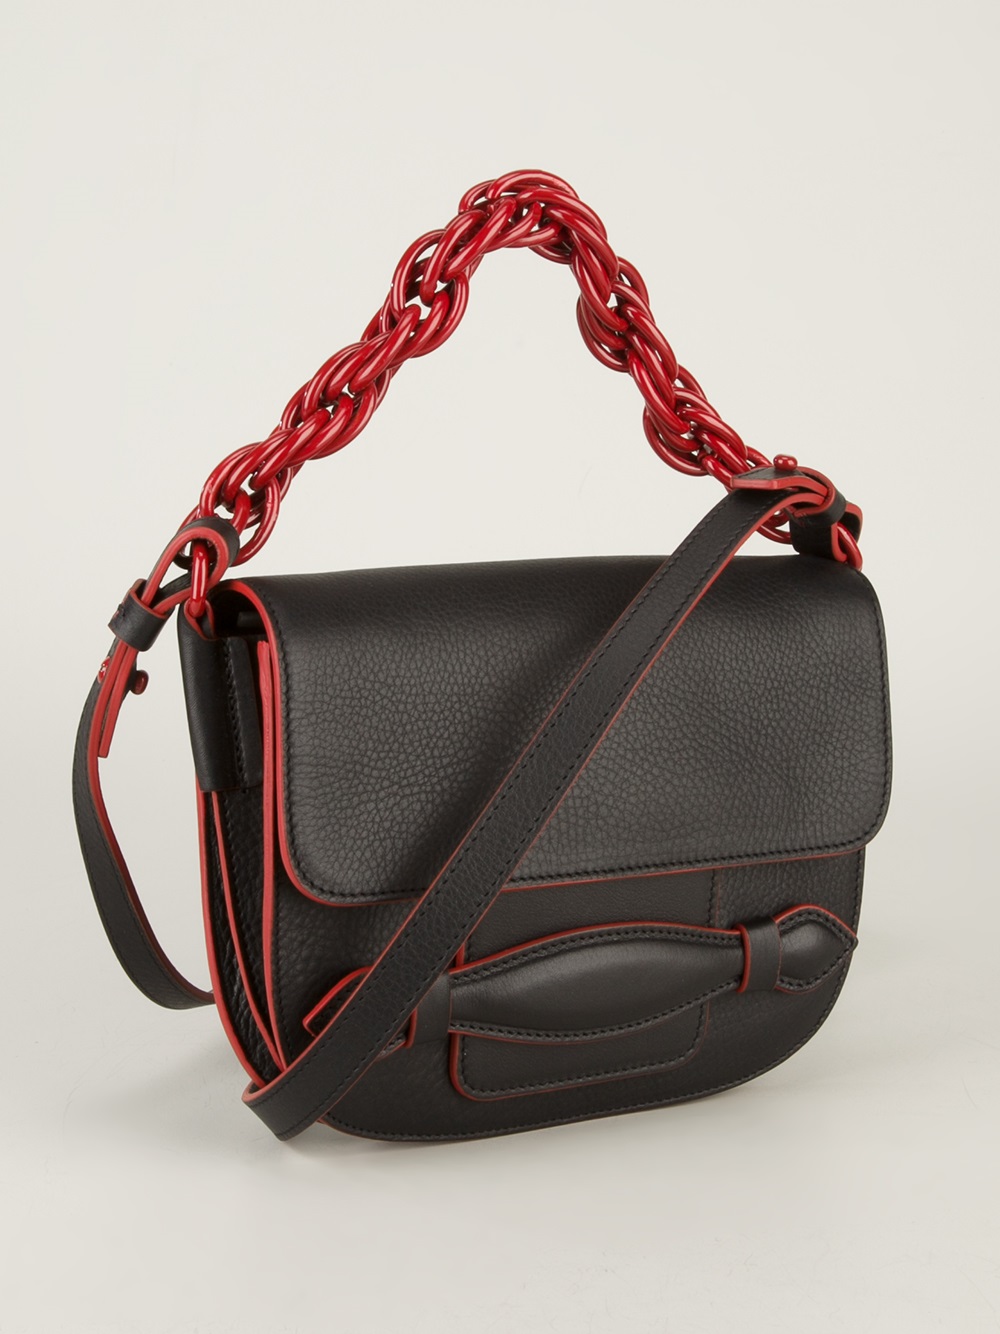 Lyst - Sonia Rykiel Chain Strap Bag in Black